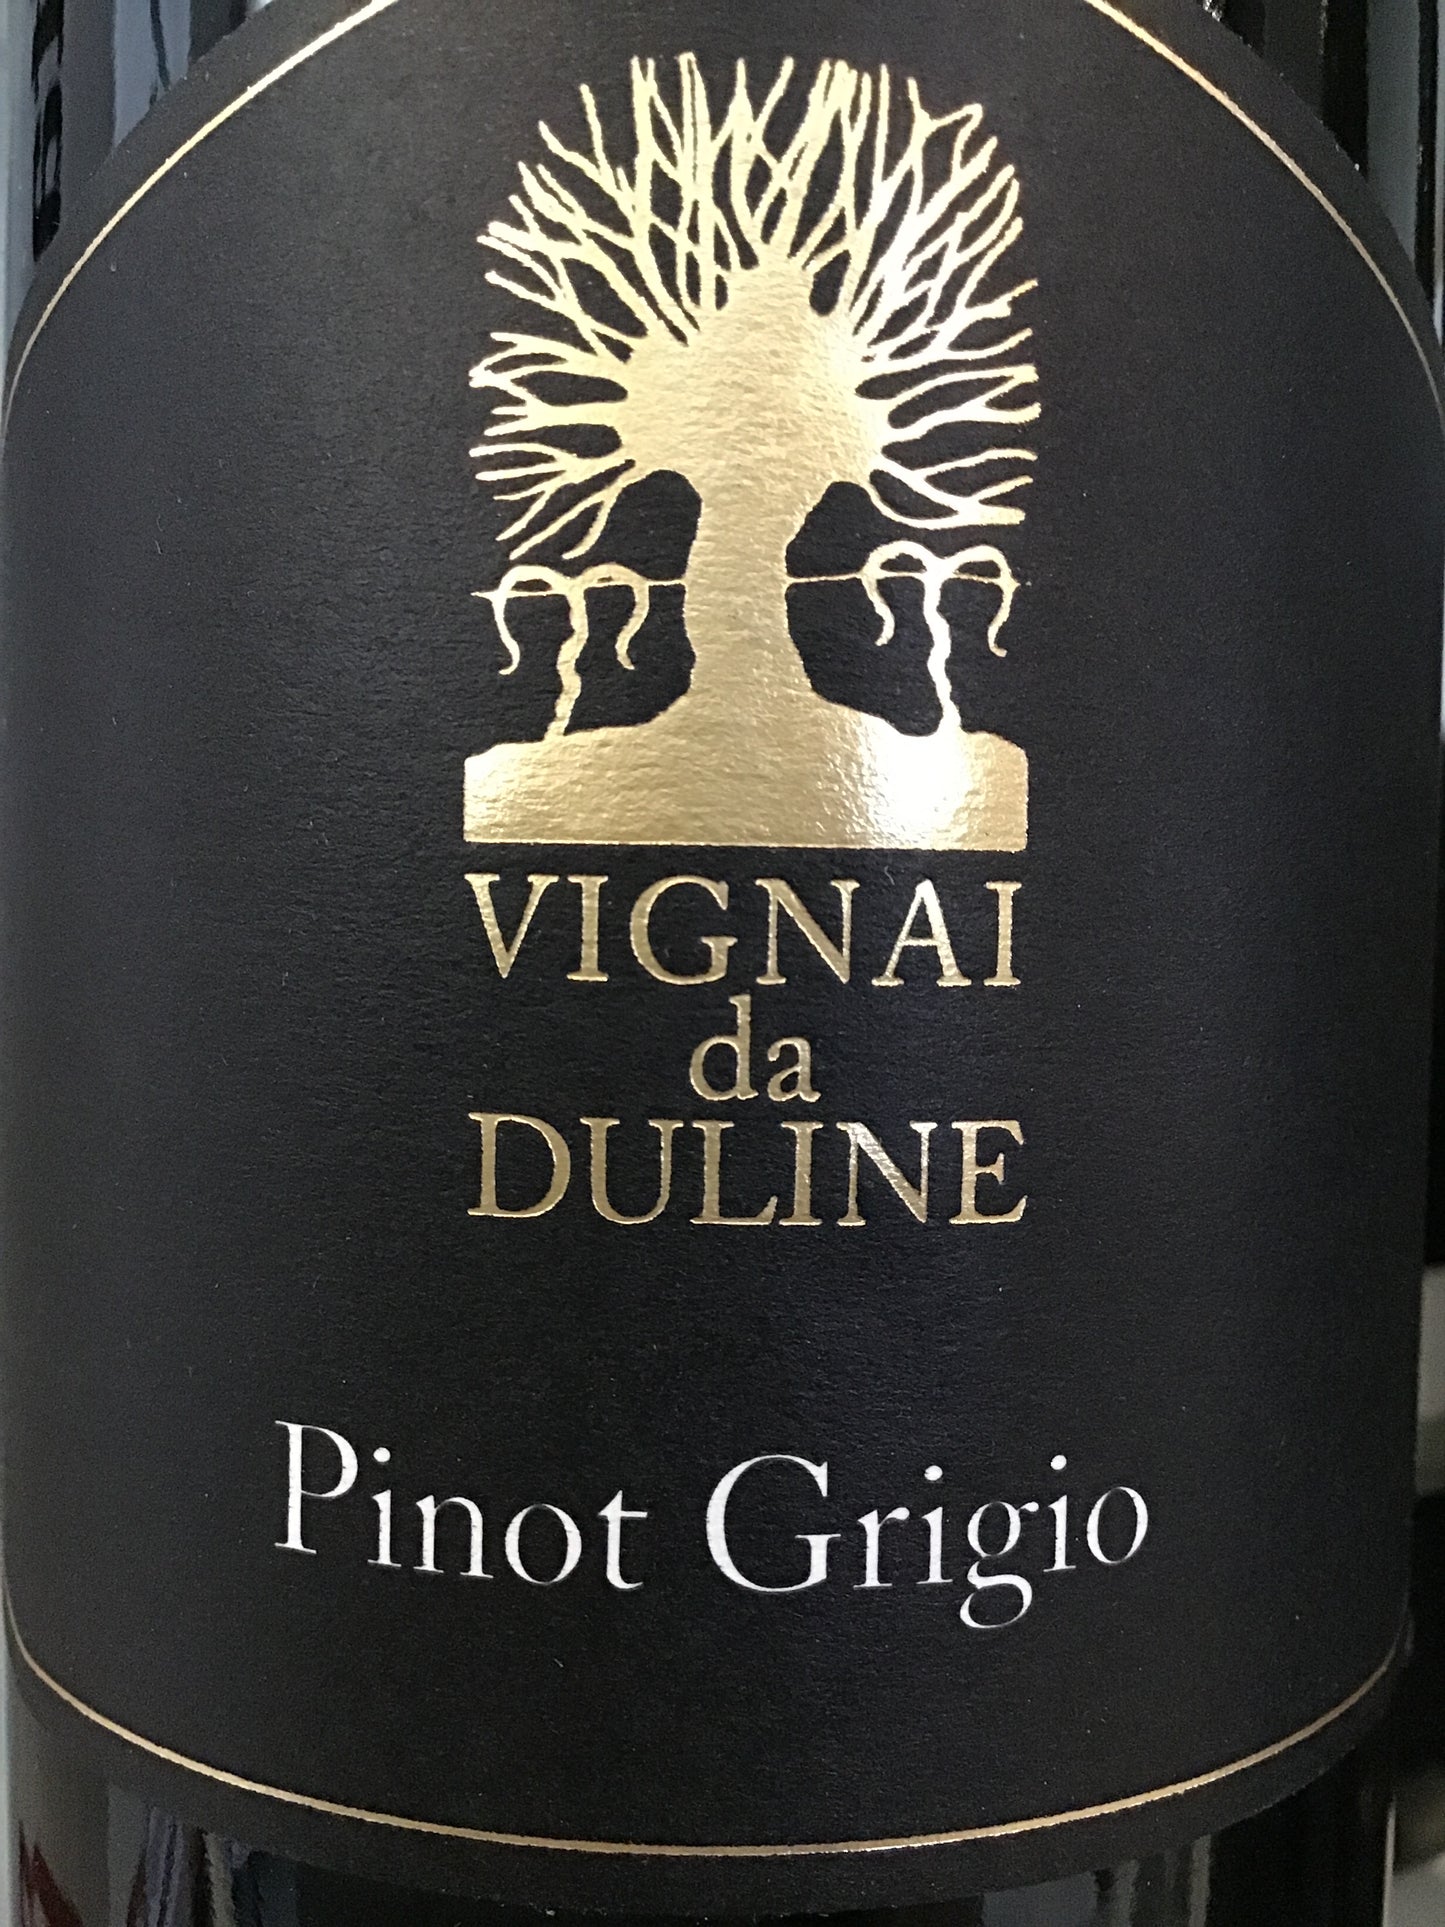 Vignai da Duline 'Ronco Pitotti' - Pinot Grigio